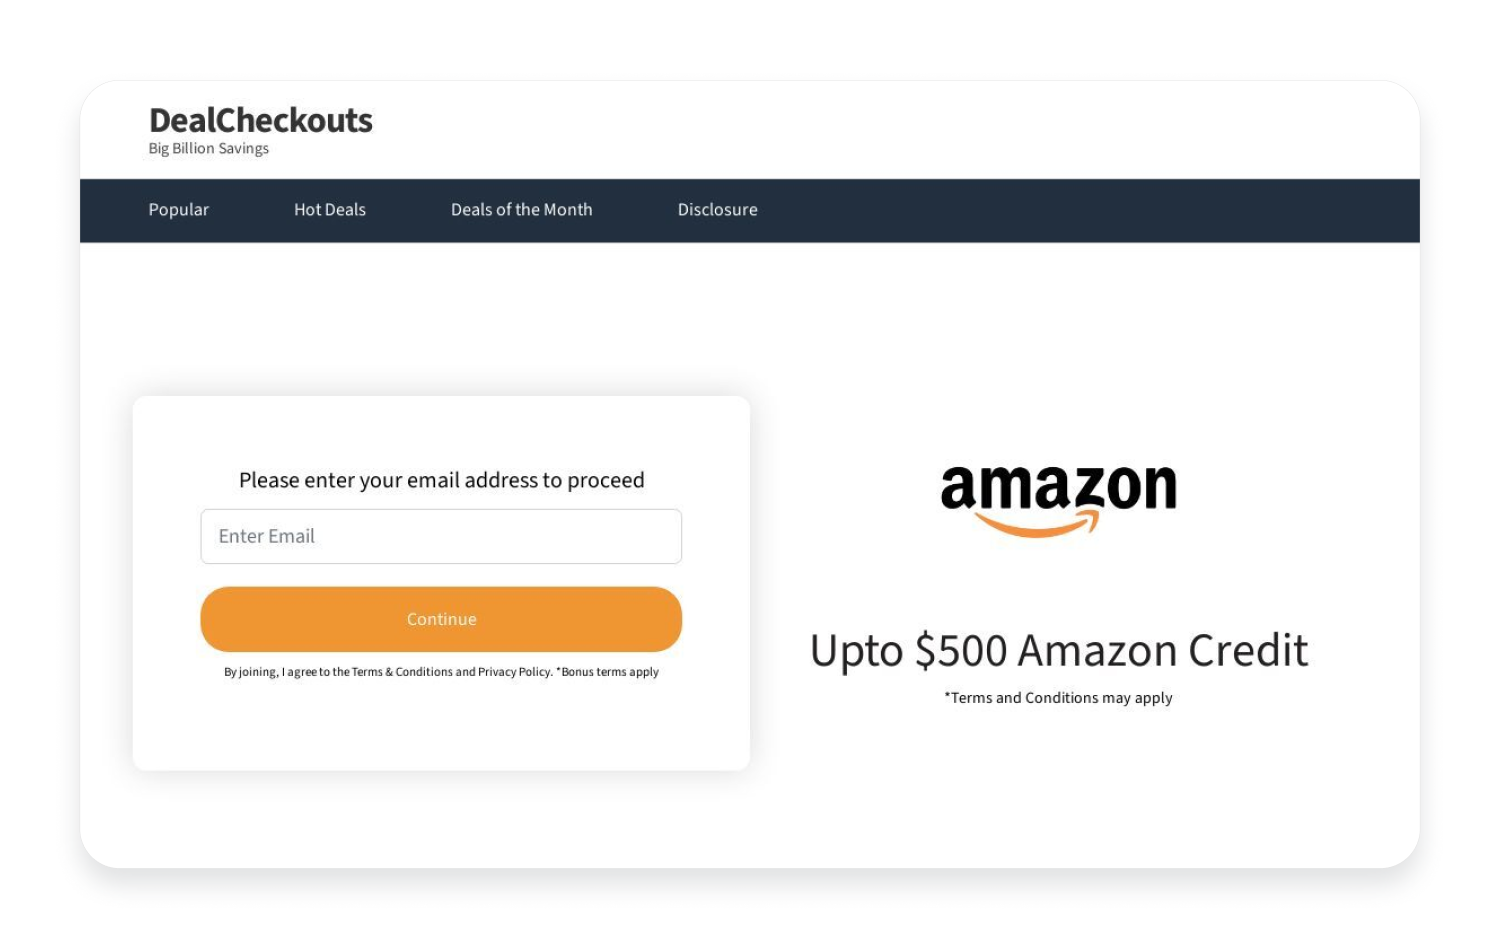 Amazon phishing example 1